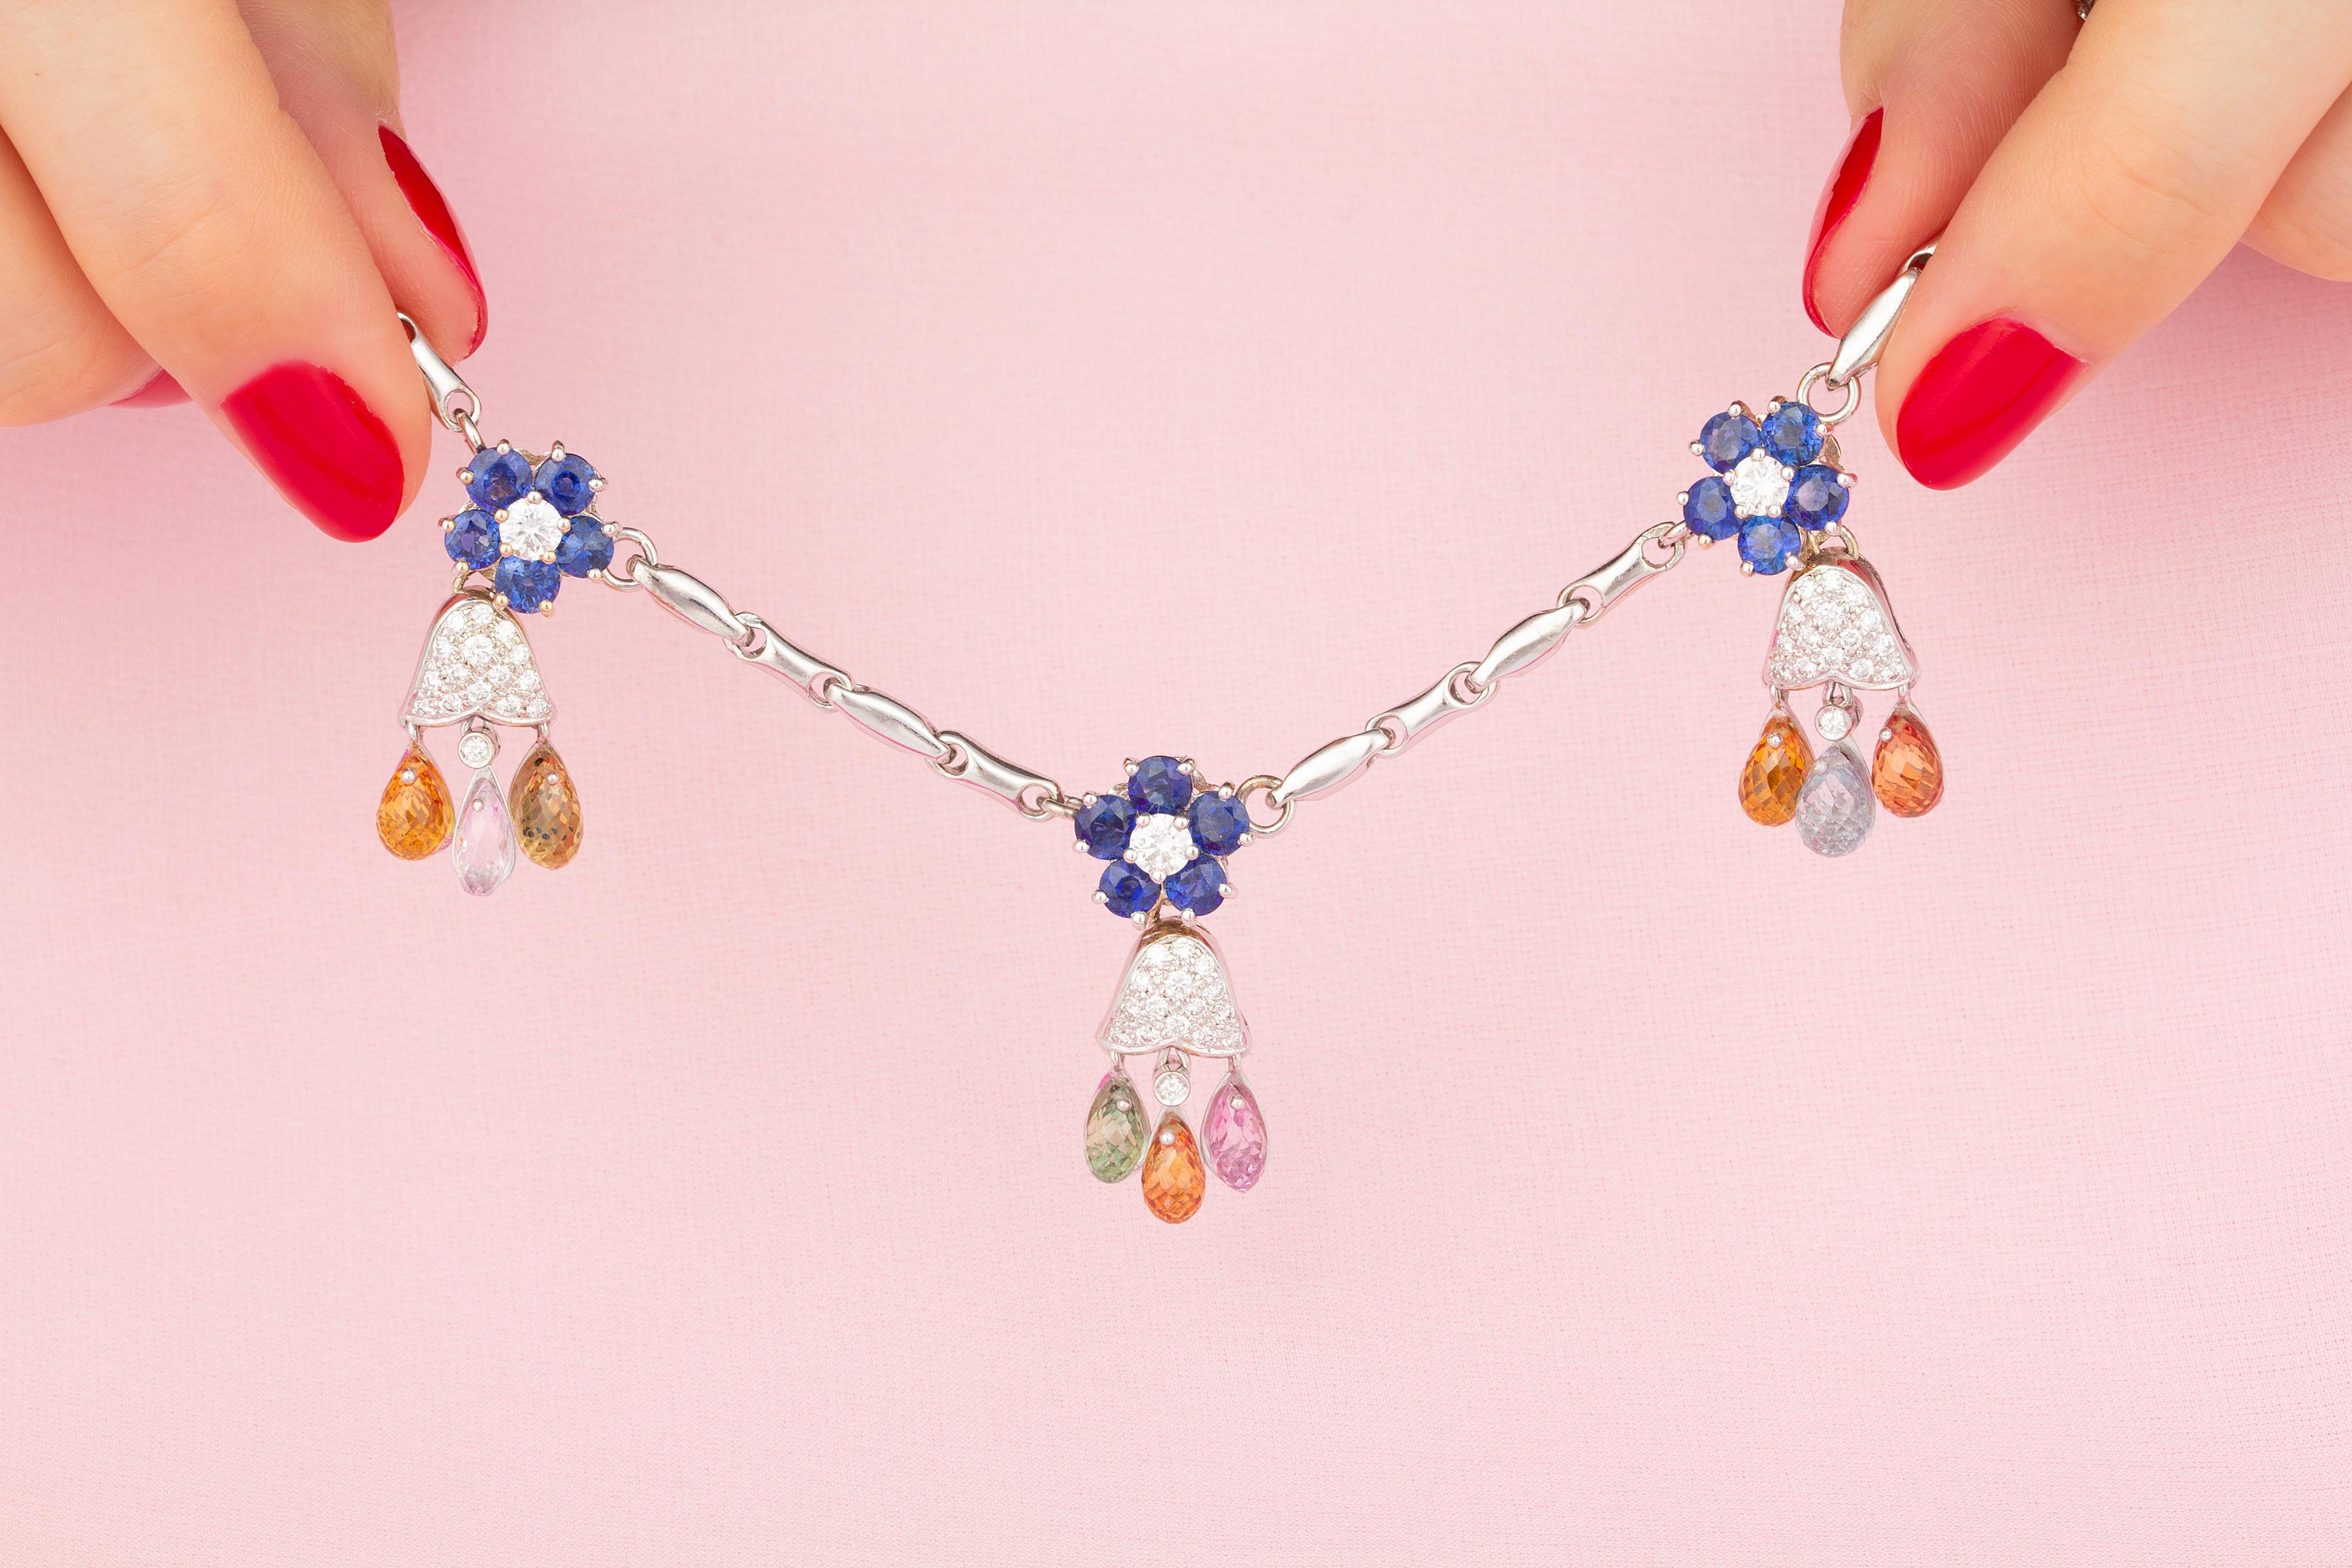 sapphire briolette necklace